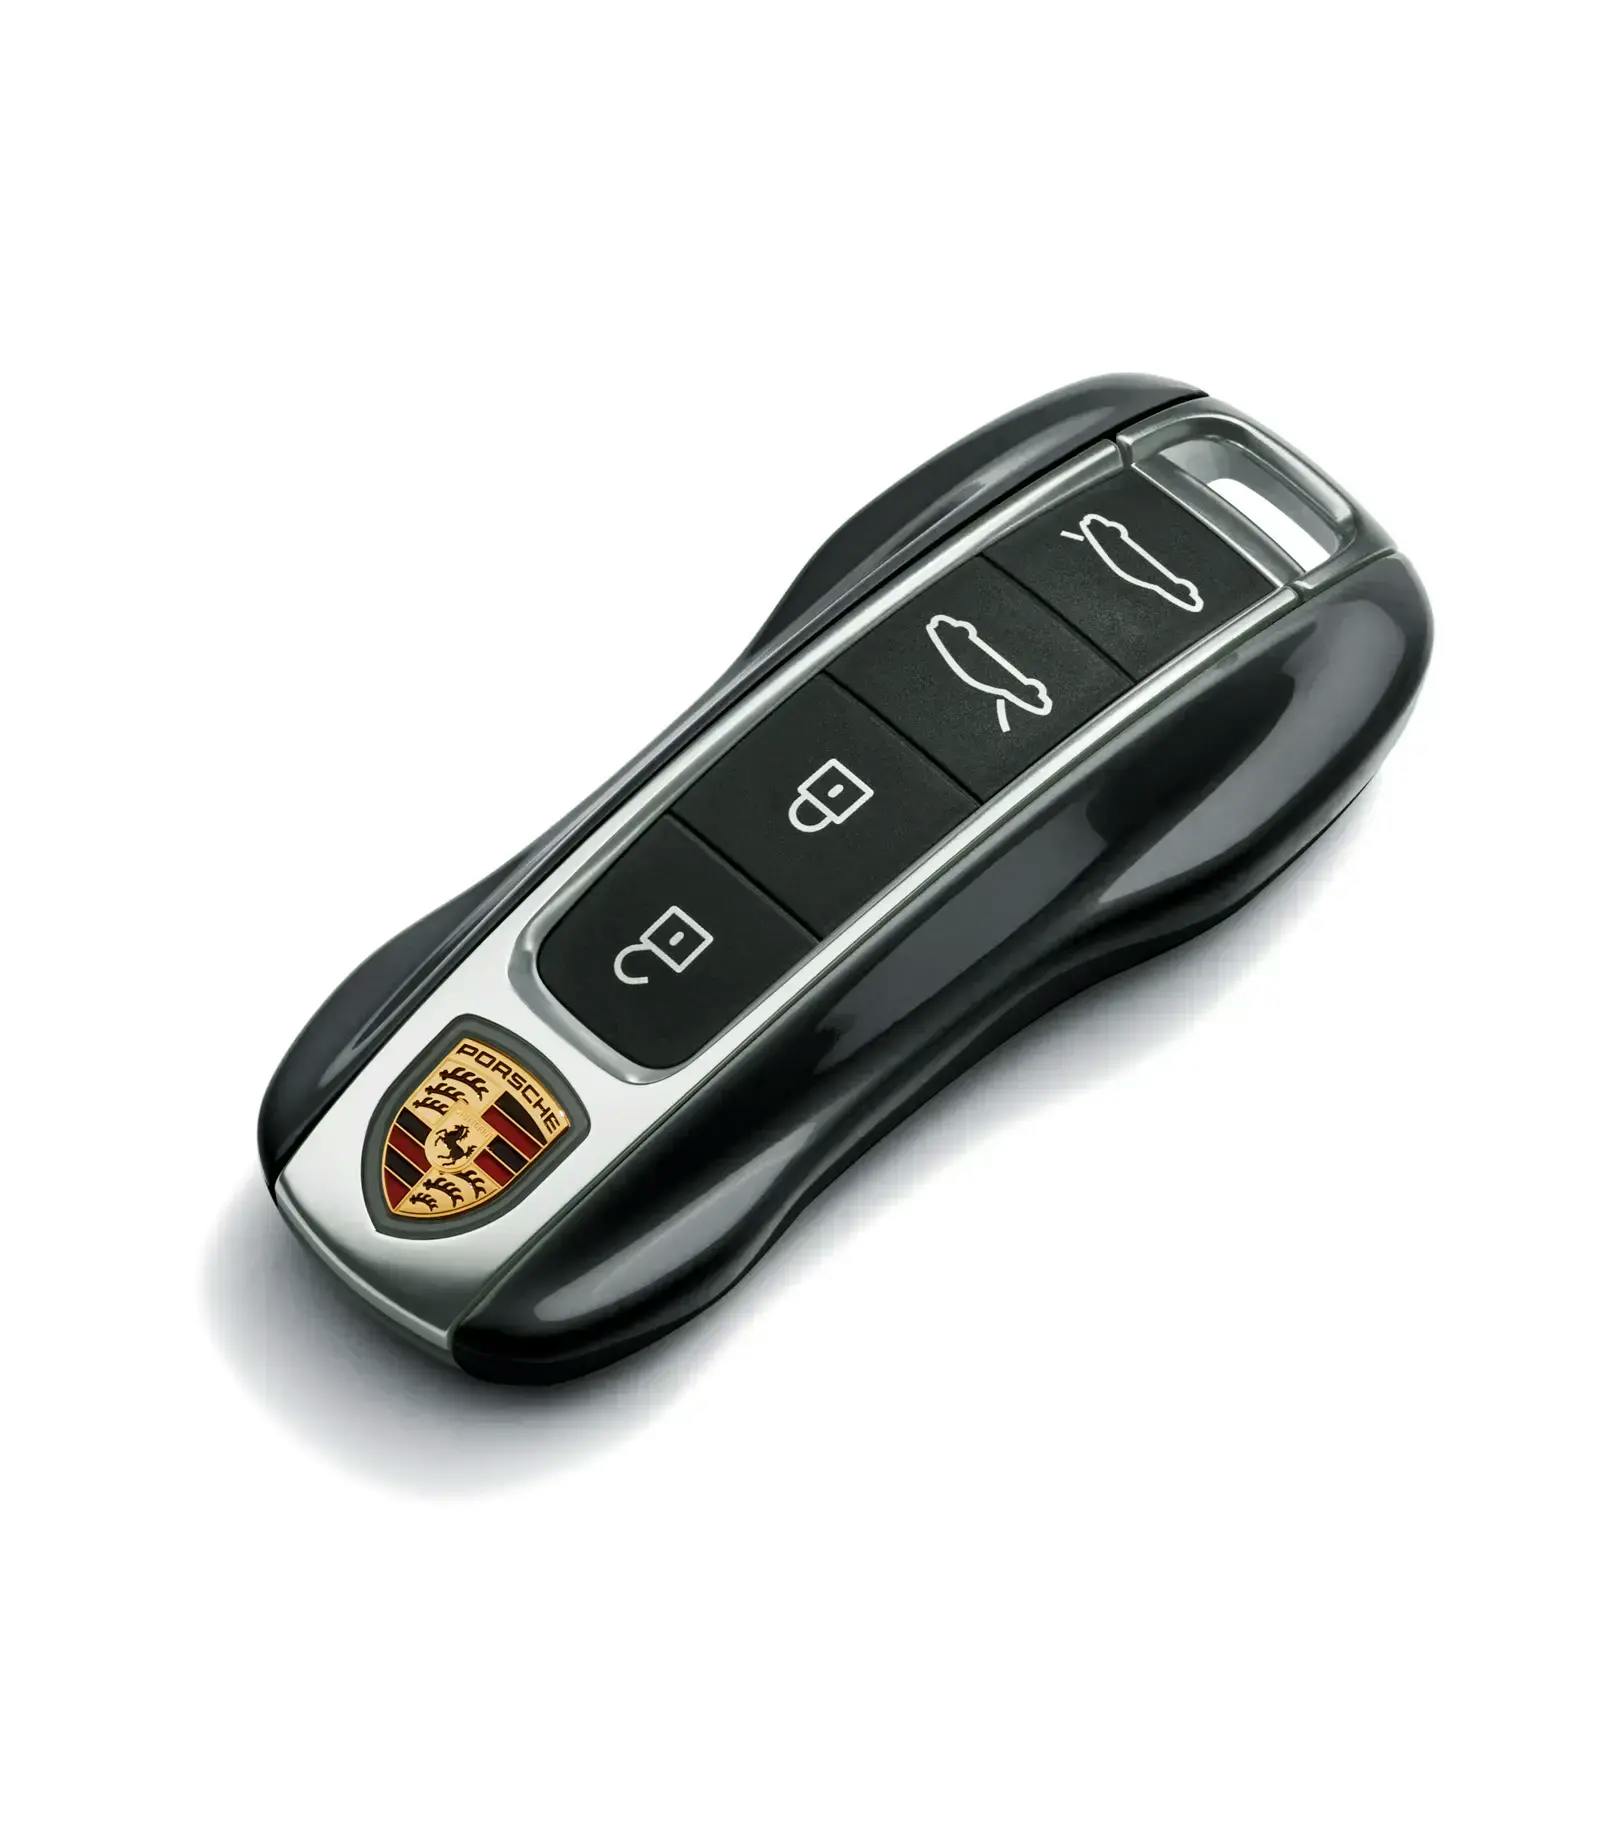 Porsche macan key